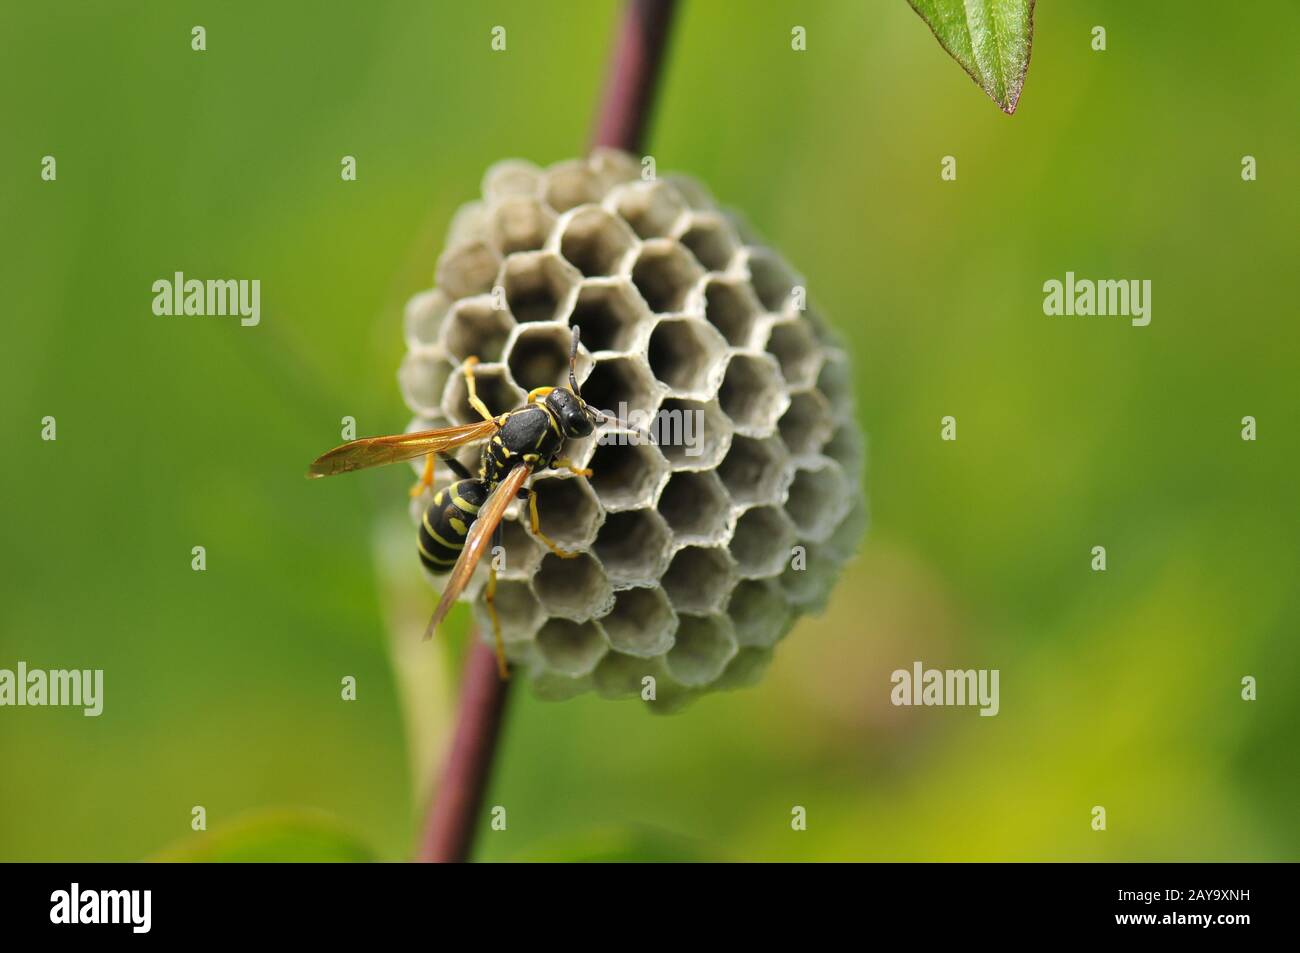 Gallic field wasp Stock Photo